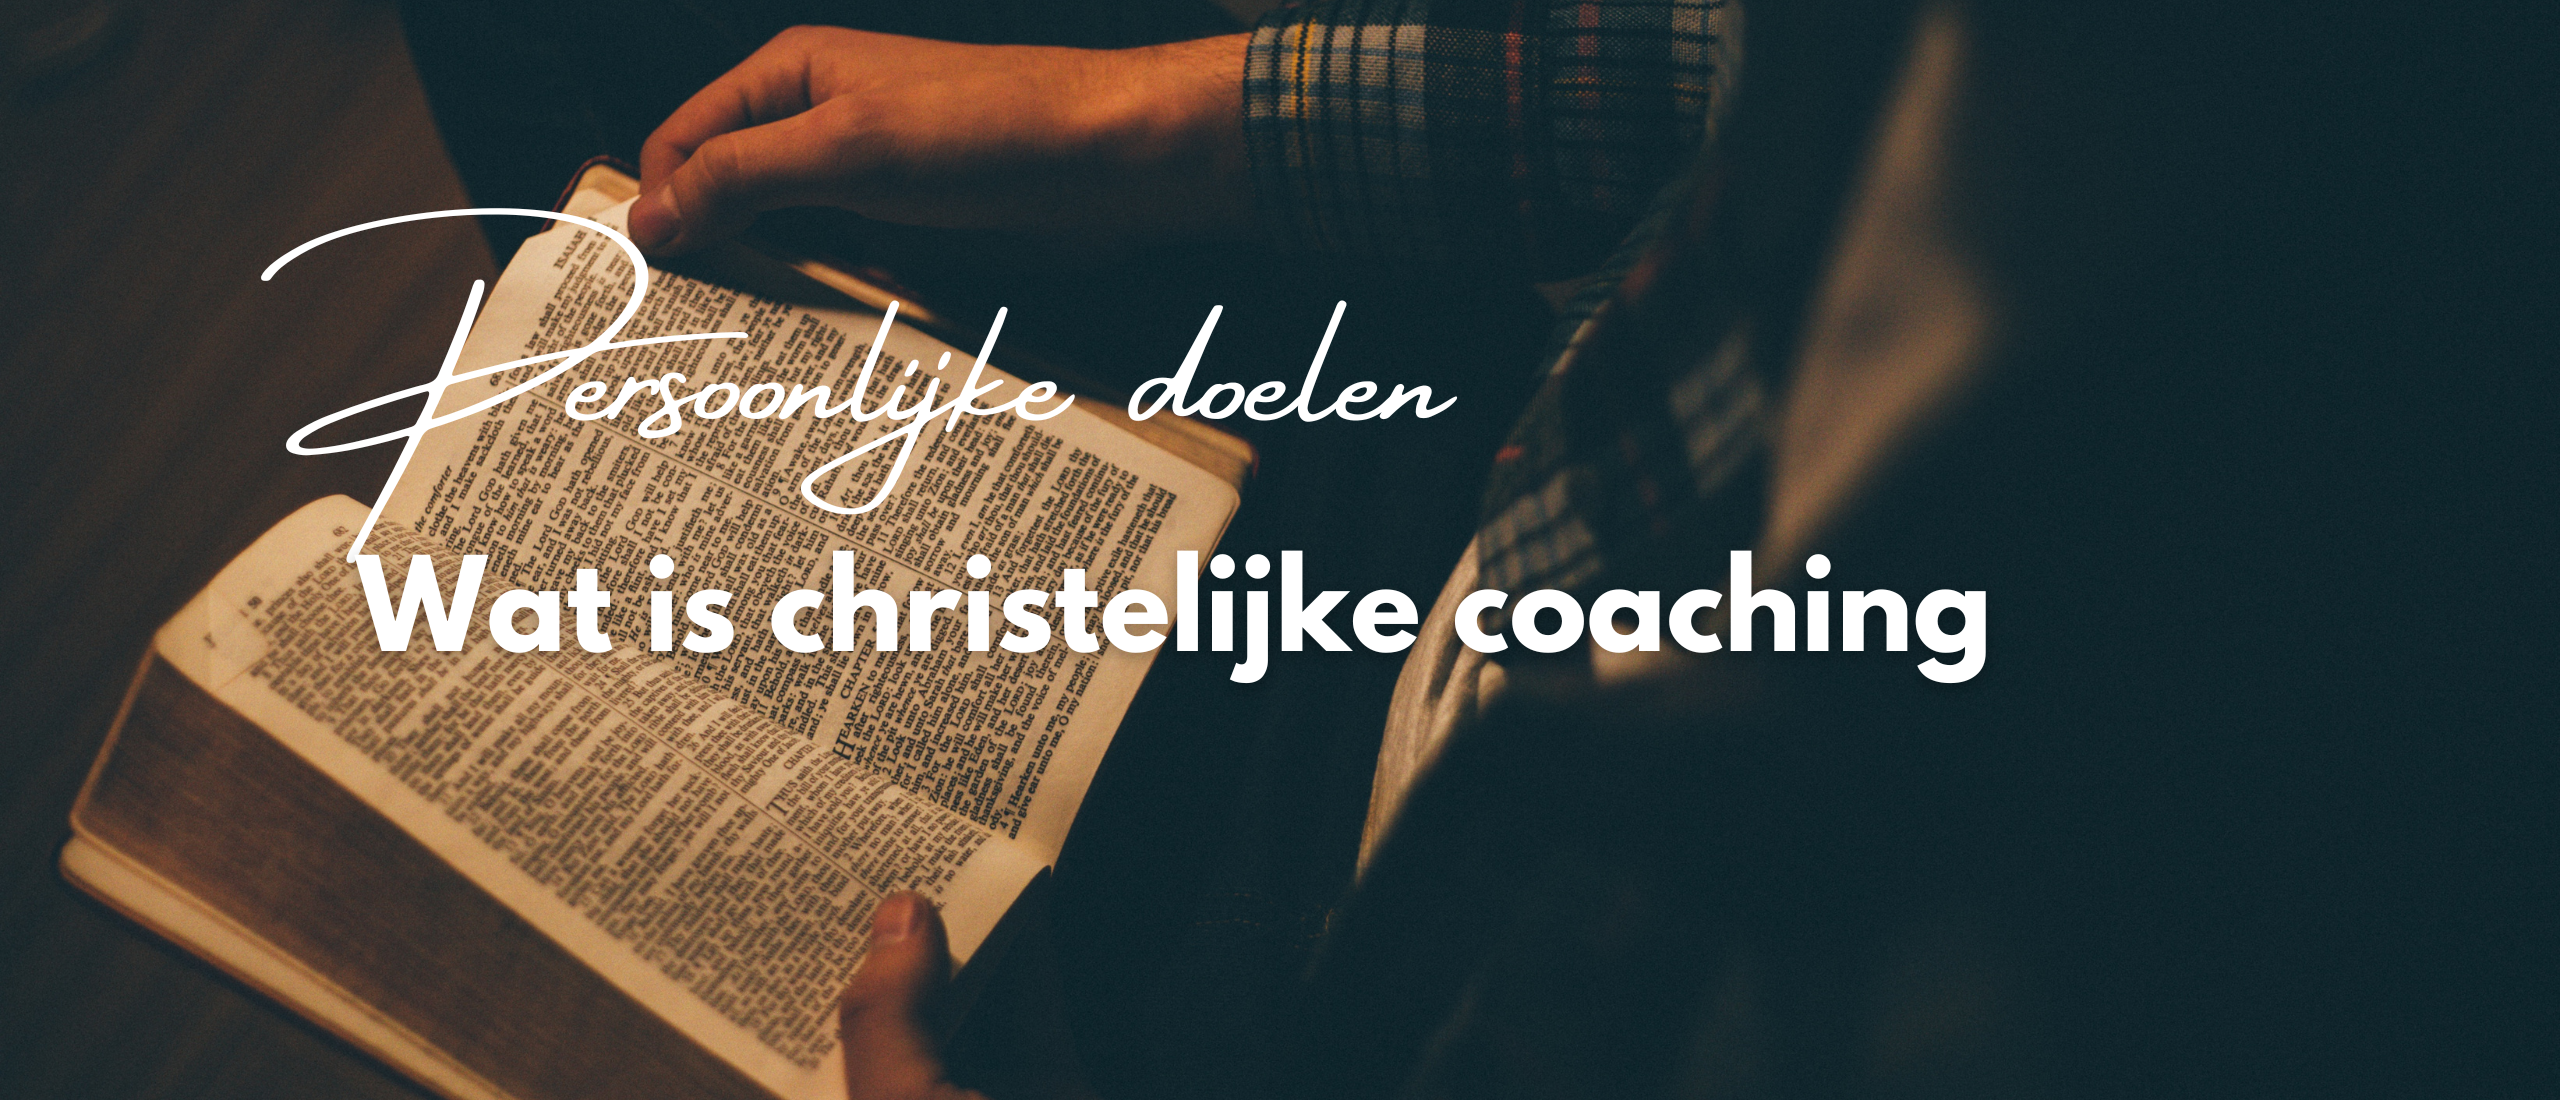 Wat is christelijke coaching?